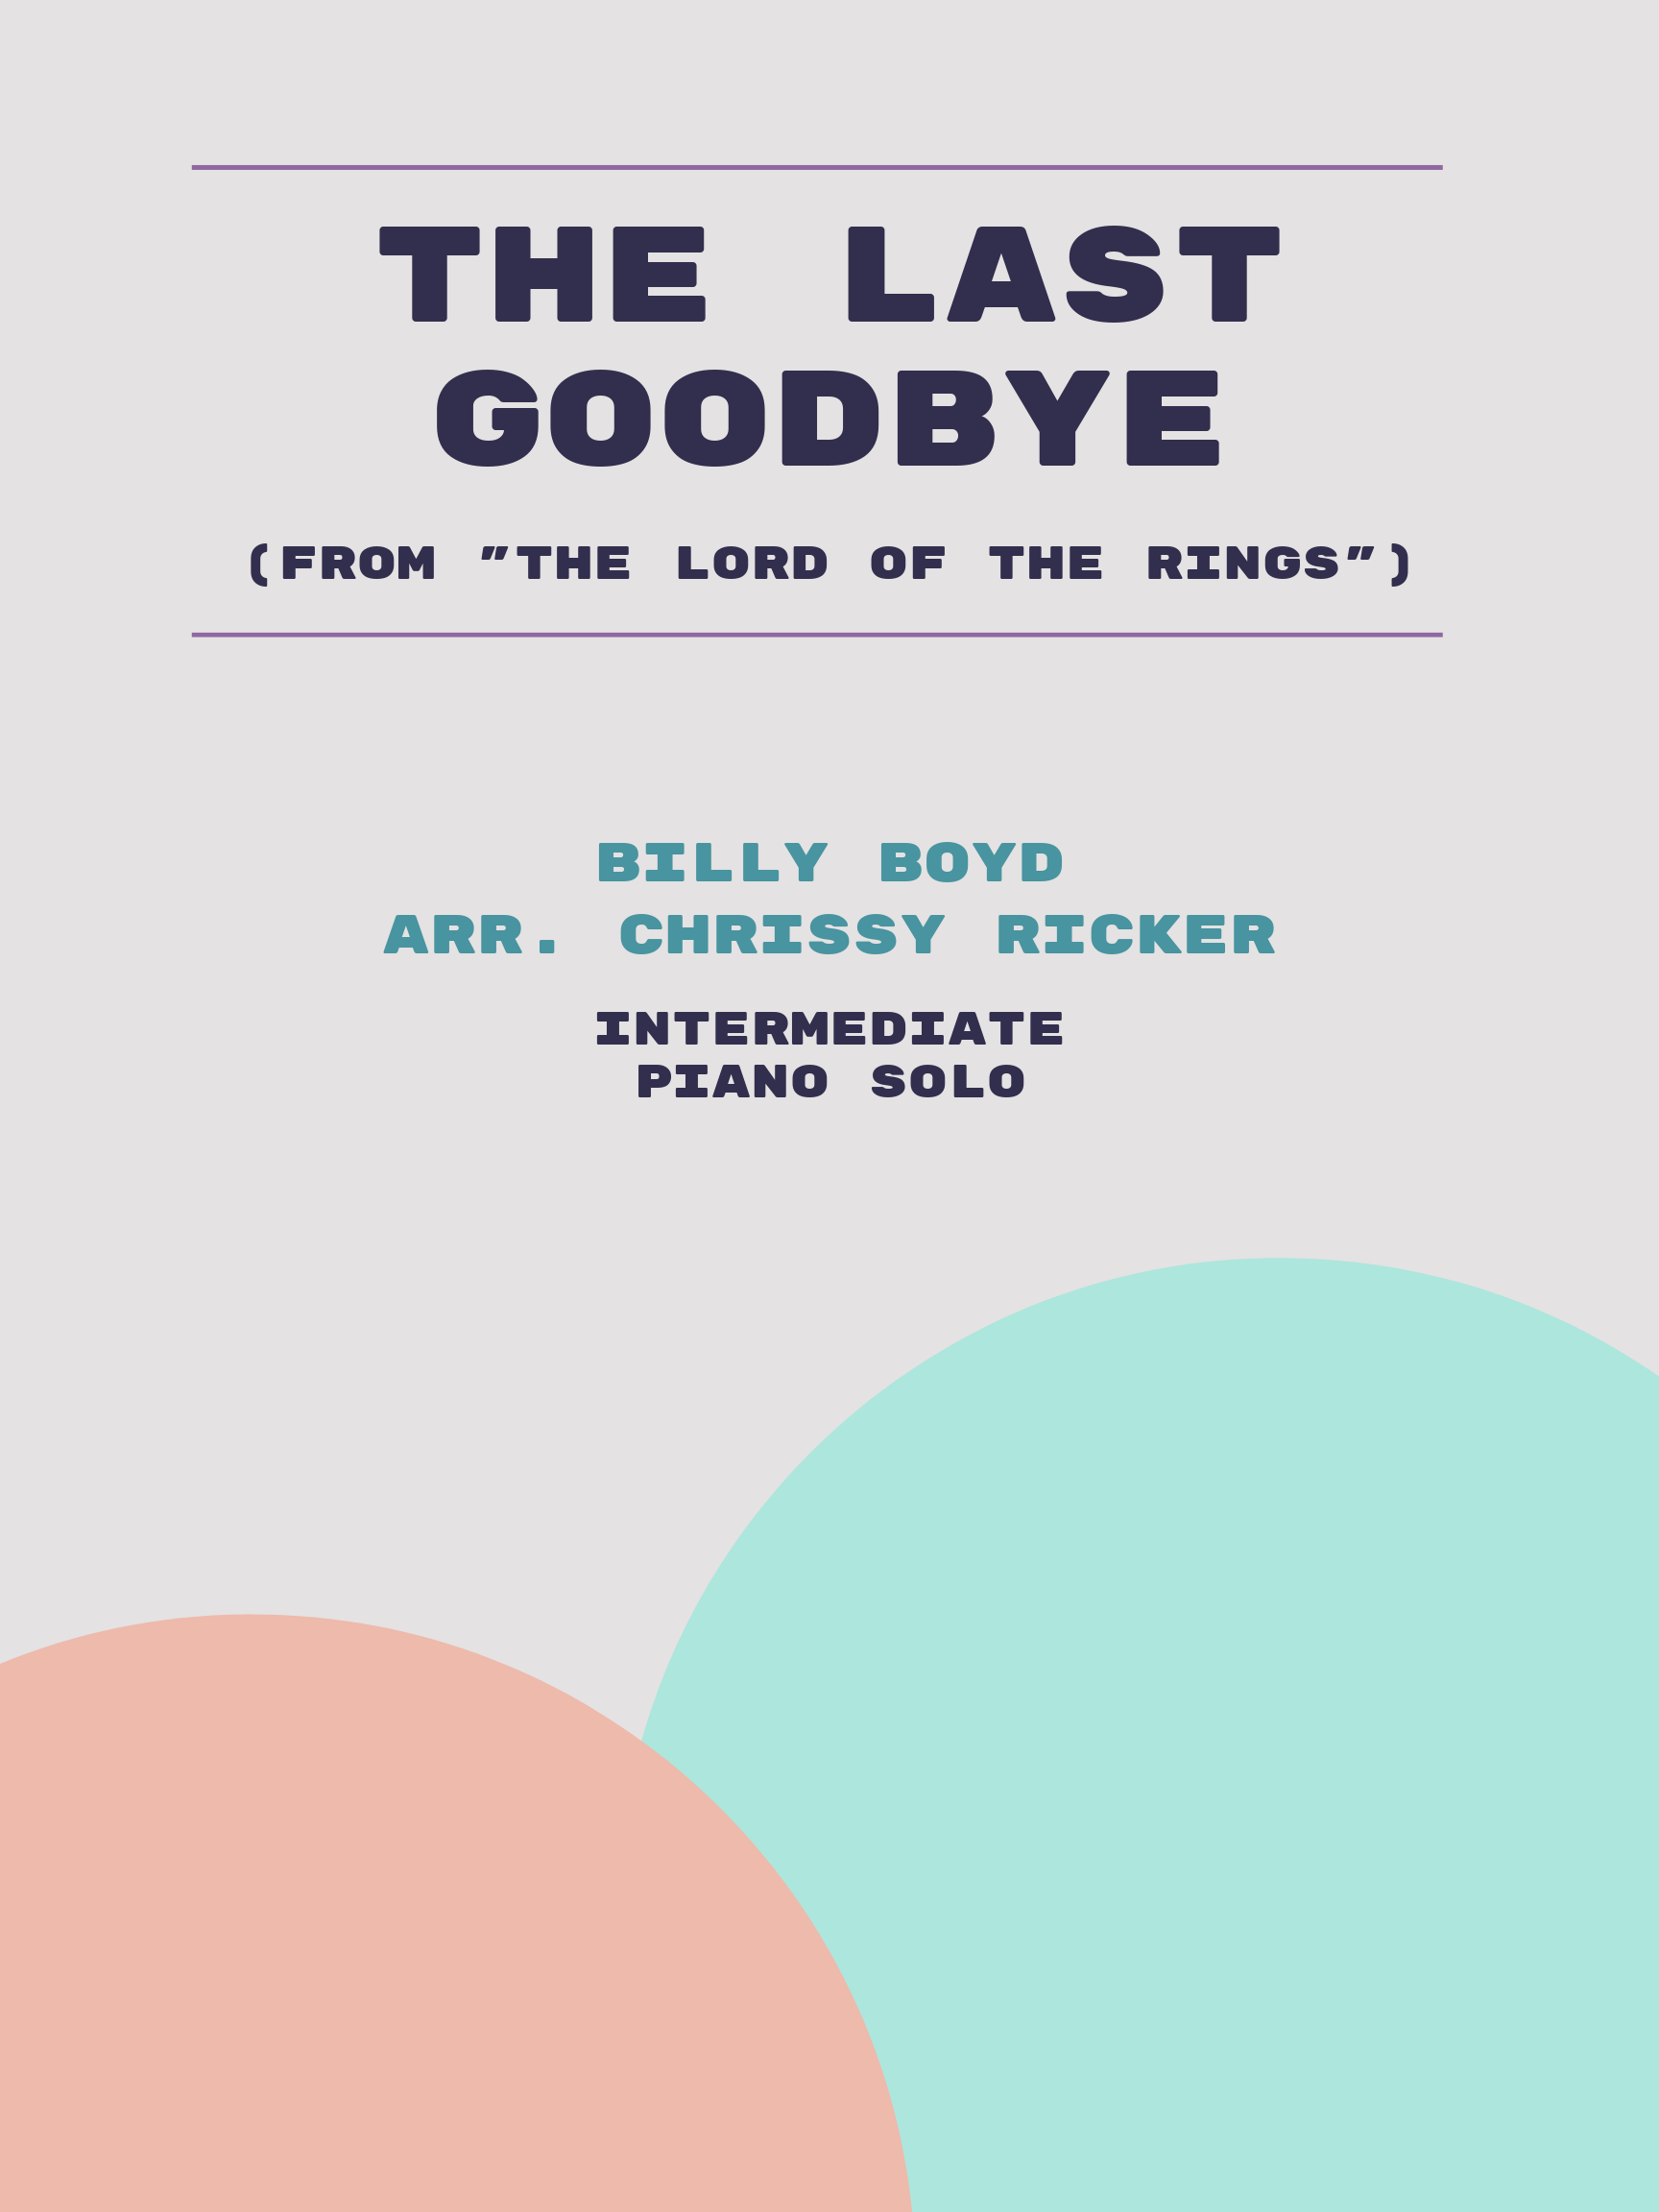 The Last Goodbye by Billy Boyd